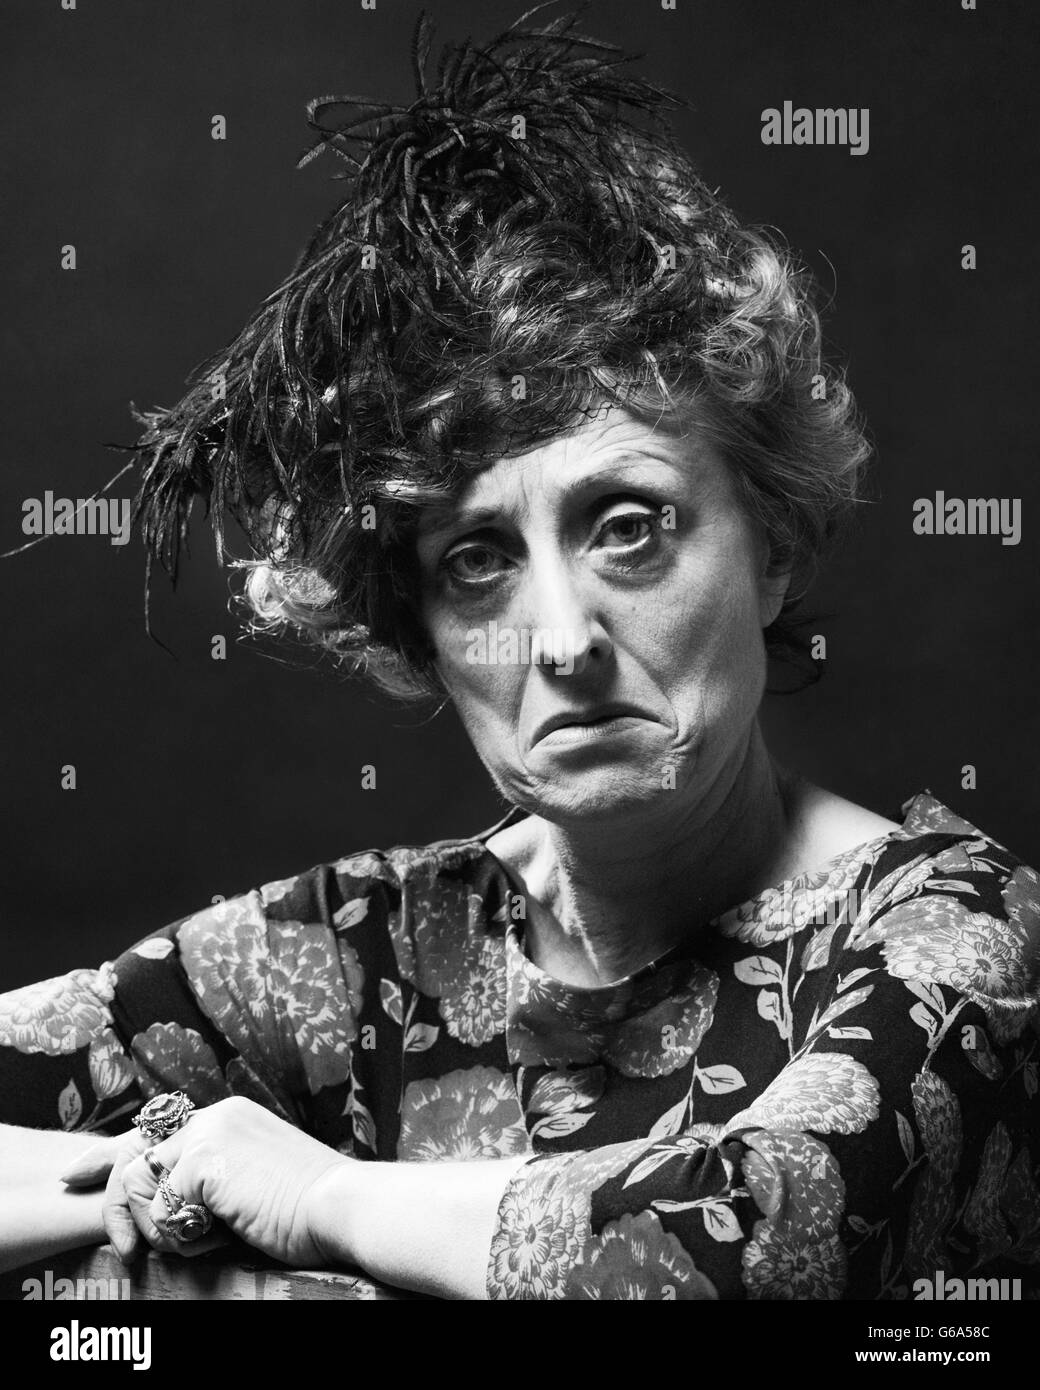 Anni Settanta ritratto di donna SENIOR CON MEDIA SOUR triste arrabbiato espressione facciale indossando un cappello piumato guardando la fotocamera Foto Stock